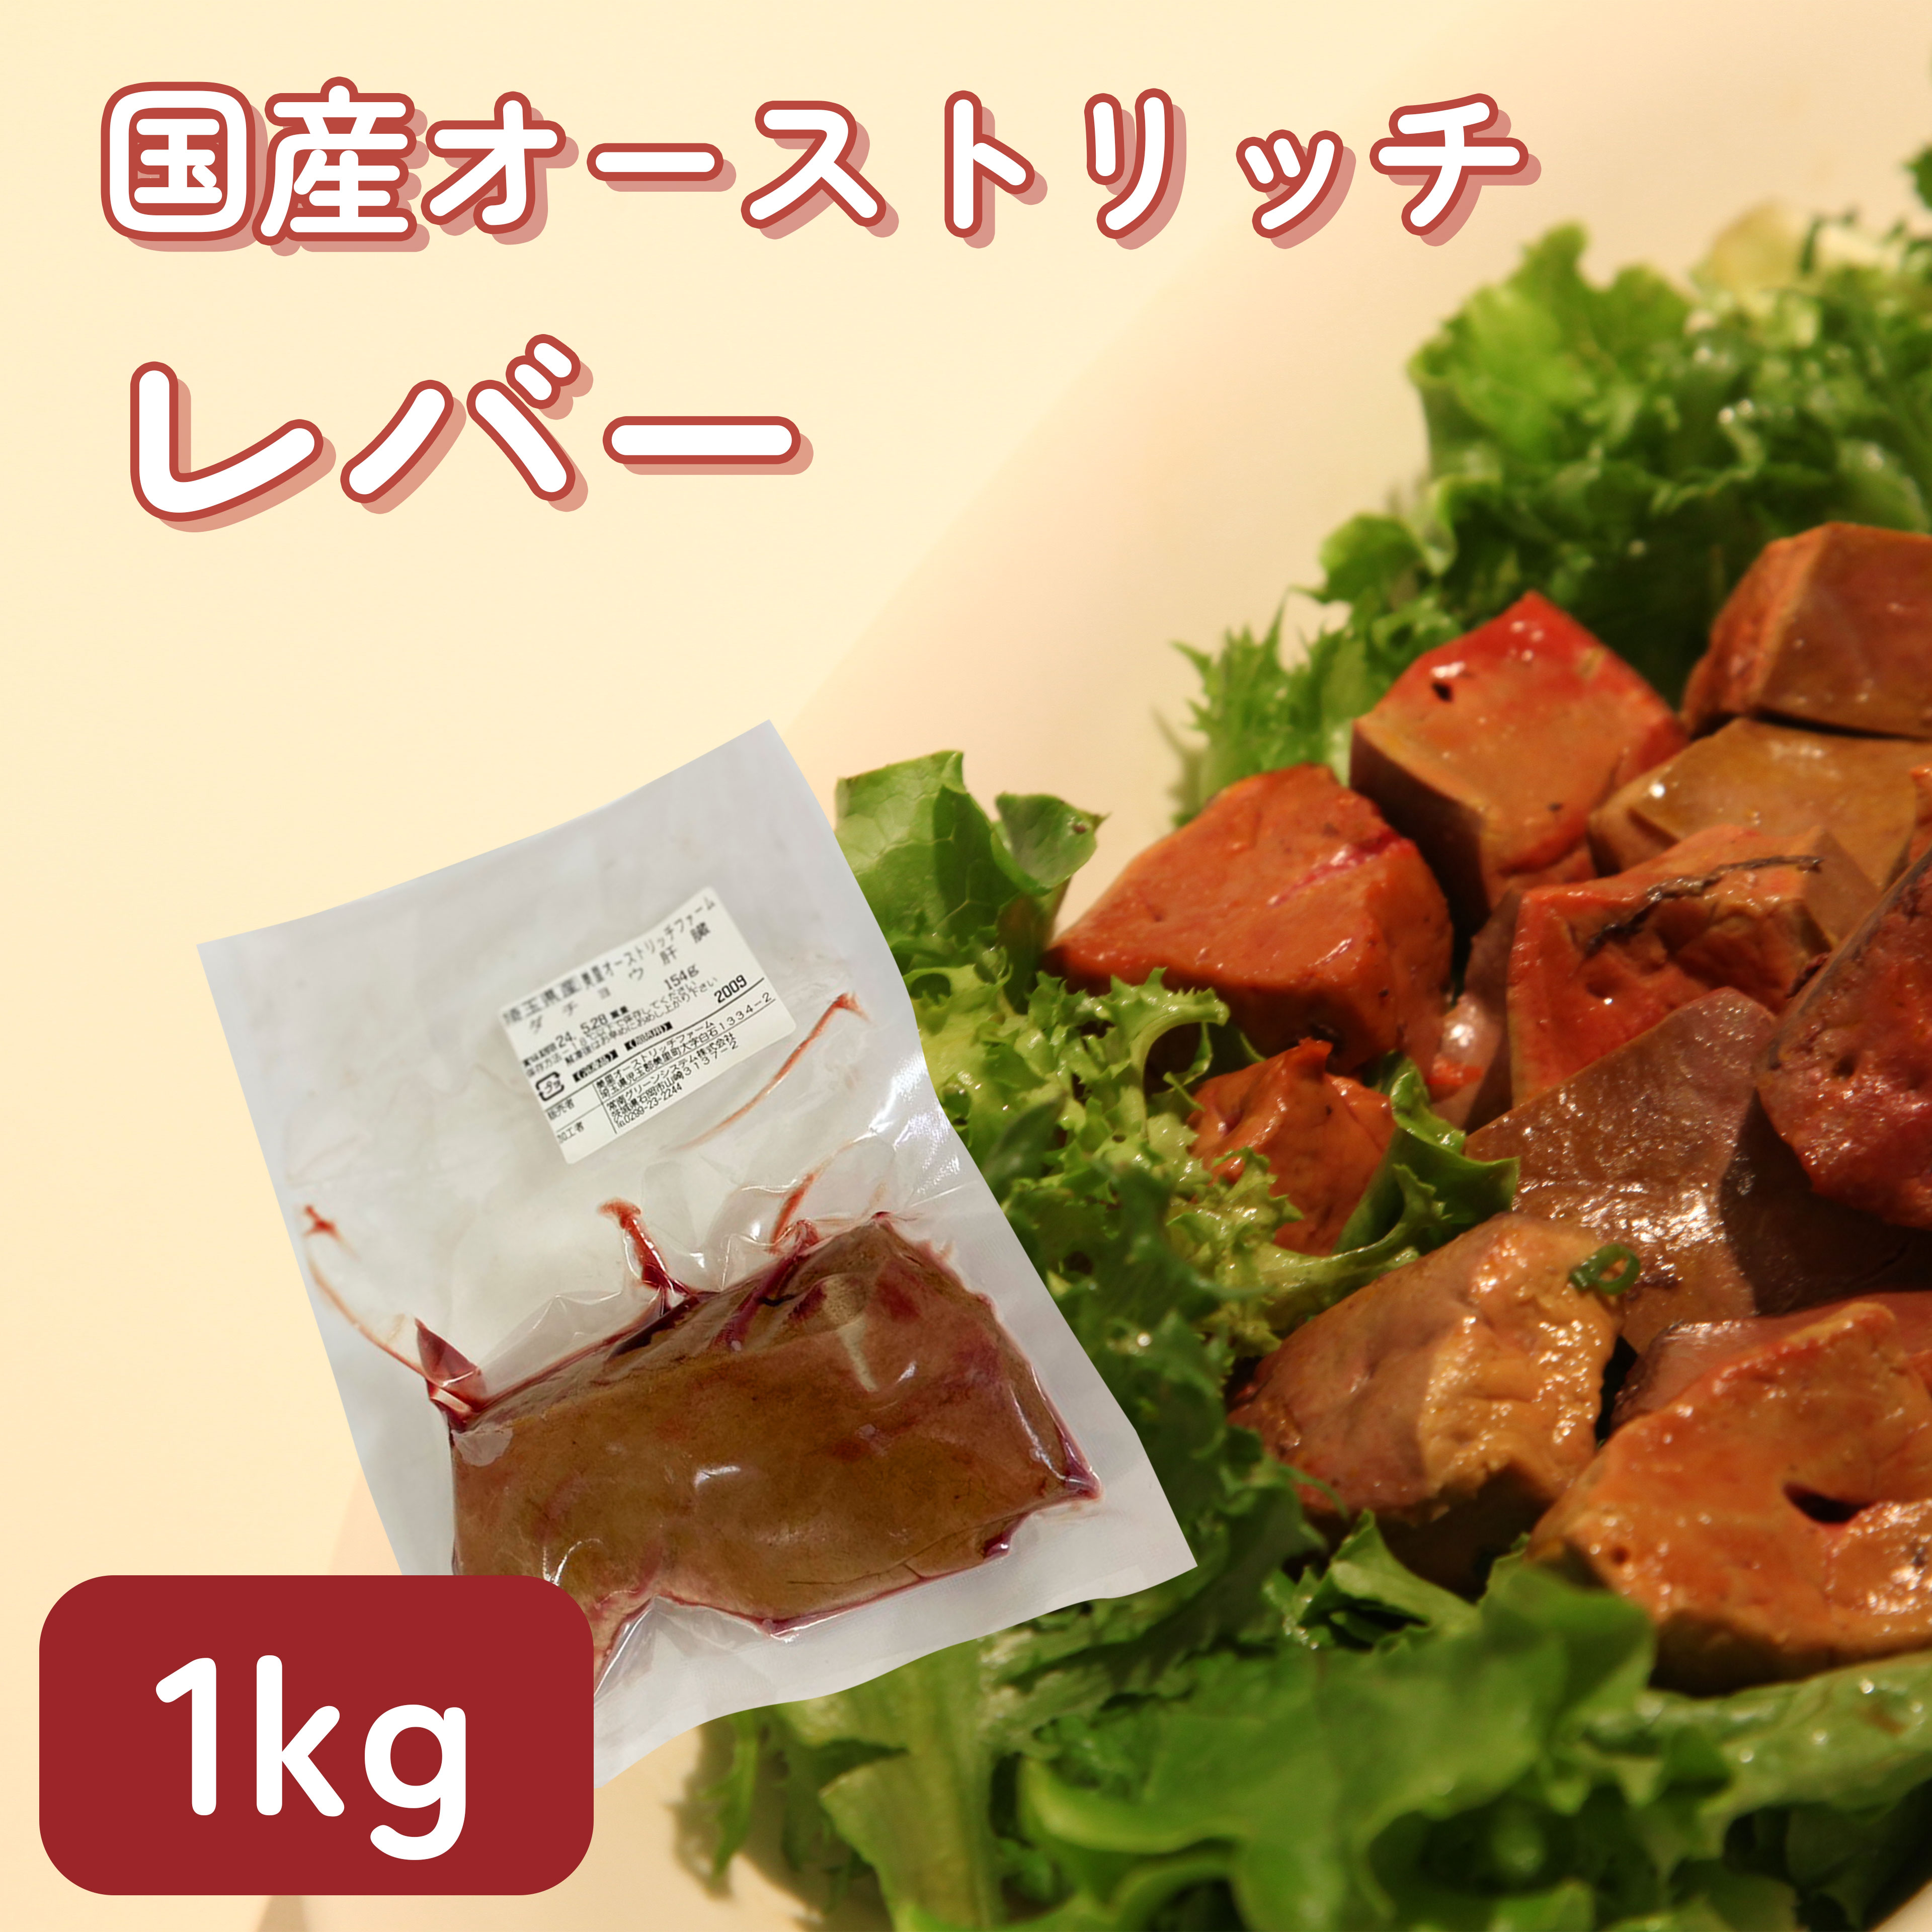 国産 ダチョウ肉 レバーお徳用1kg 貧血 鉄分 ヘルシー ダイエット 健康 高タンパク